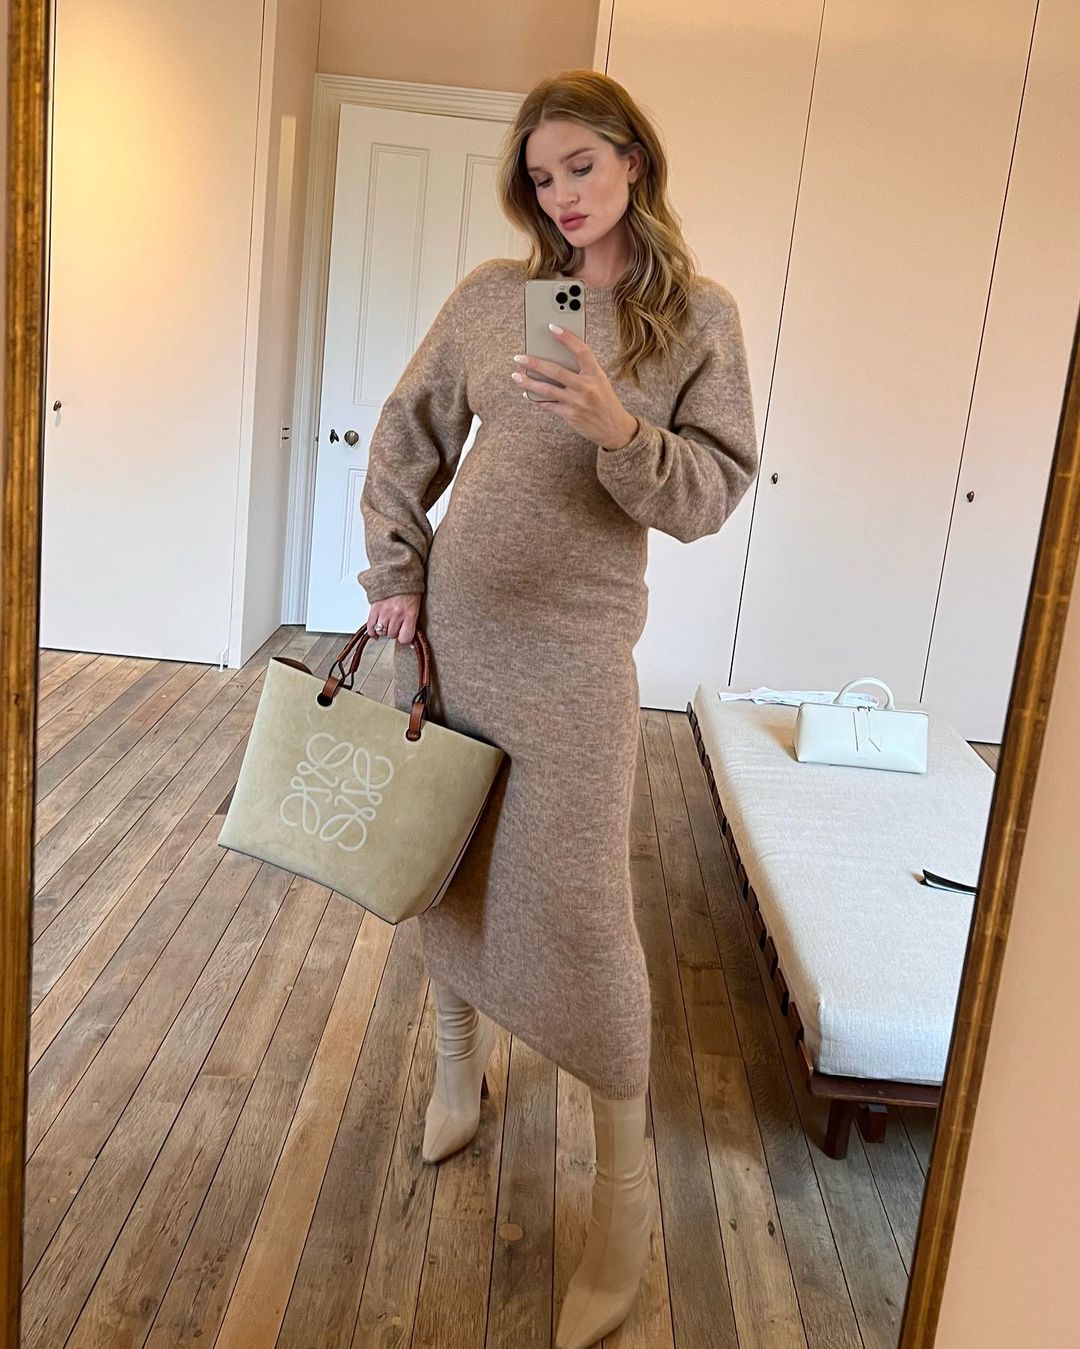 Рози ХантингтонУайтли — пожалуй лучший пример того как можно стильно одеваться во время беременности